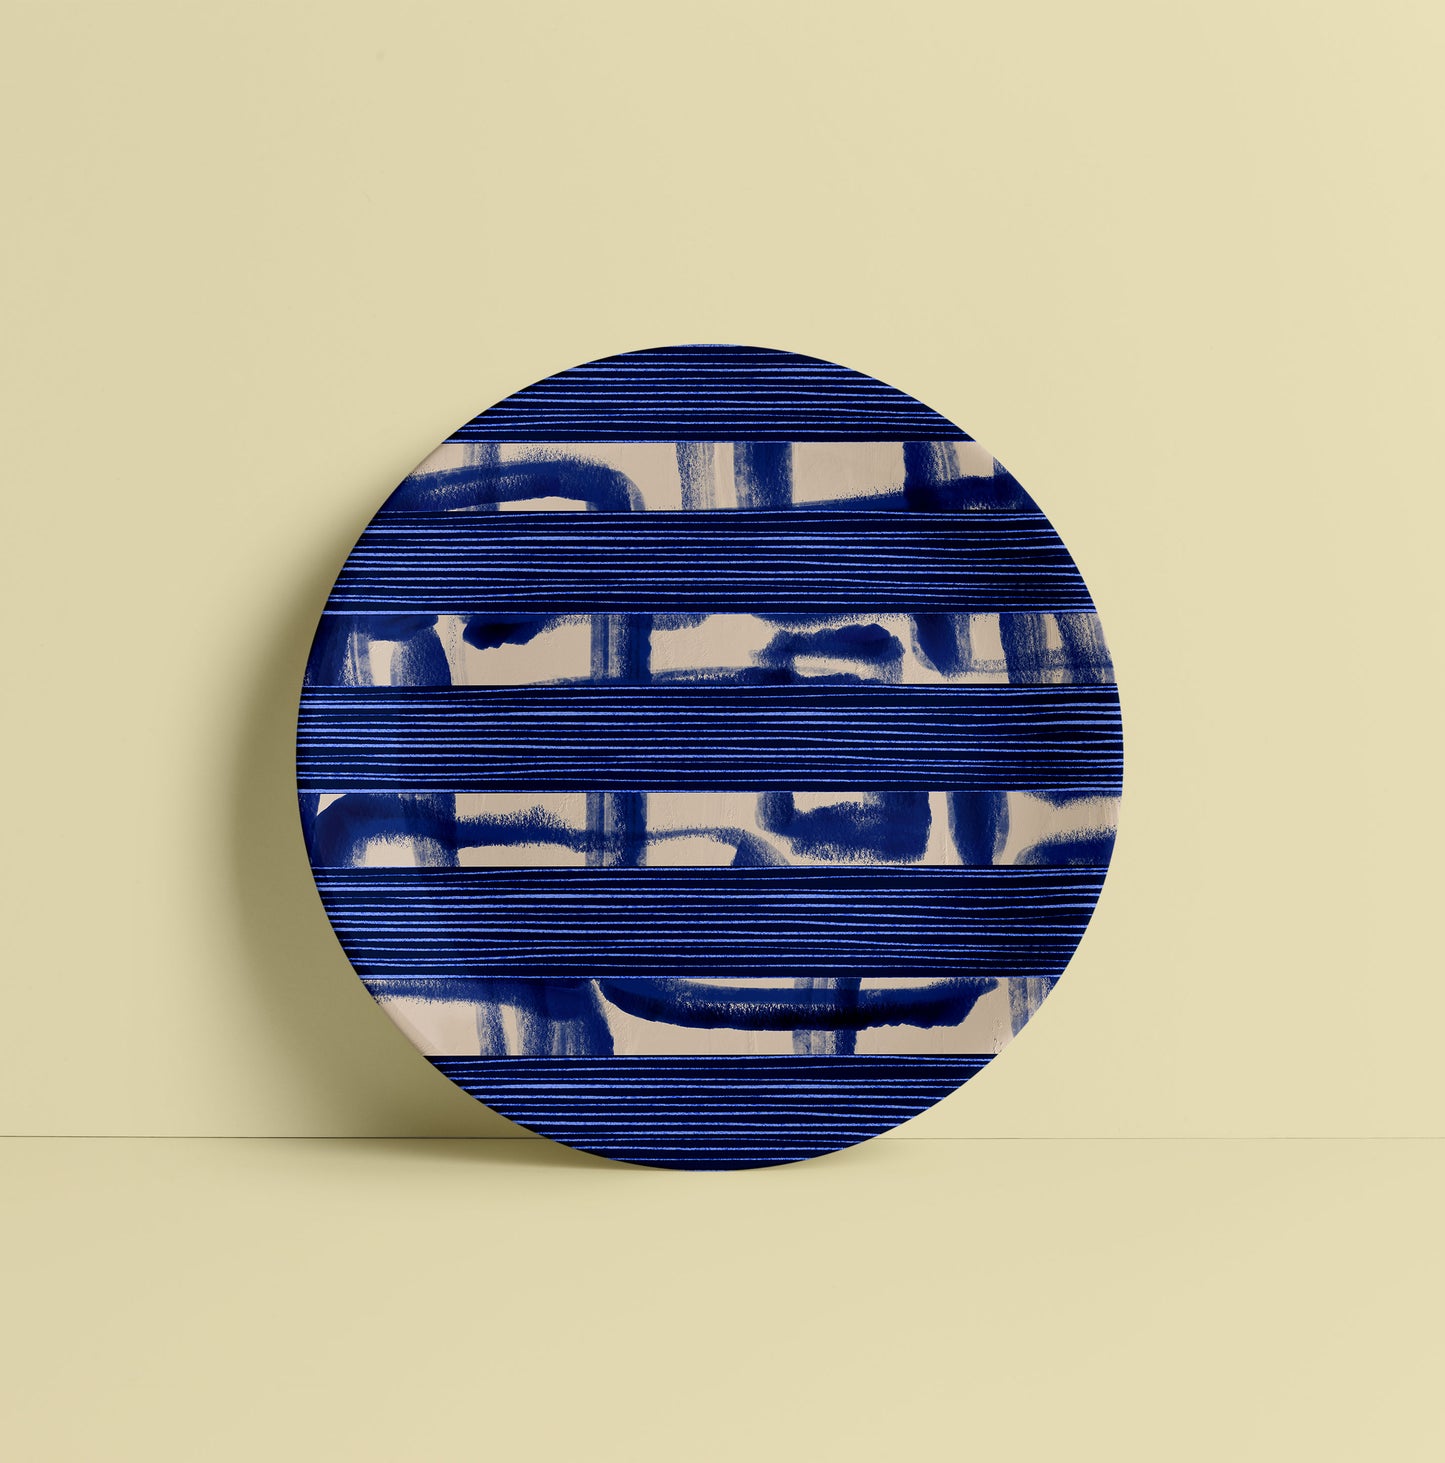 Indigo Blue Ceramic Plate for Home Decor